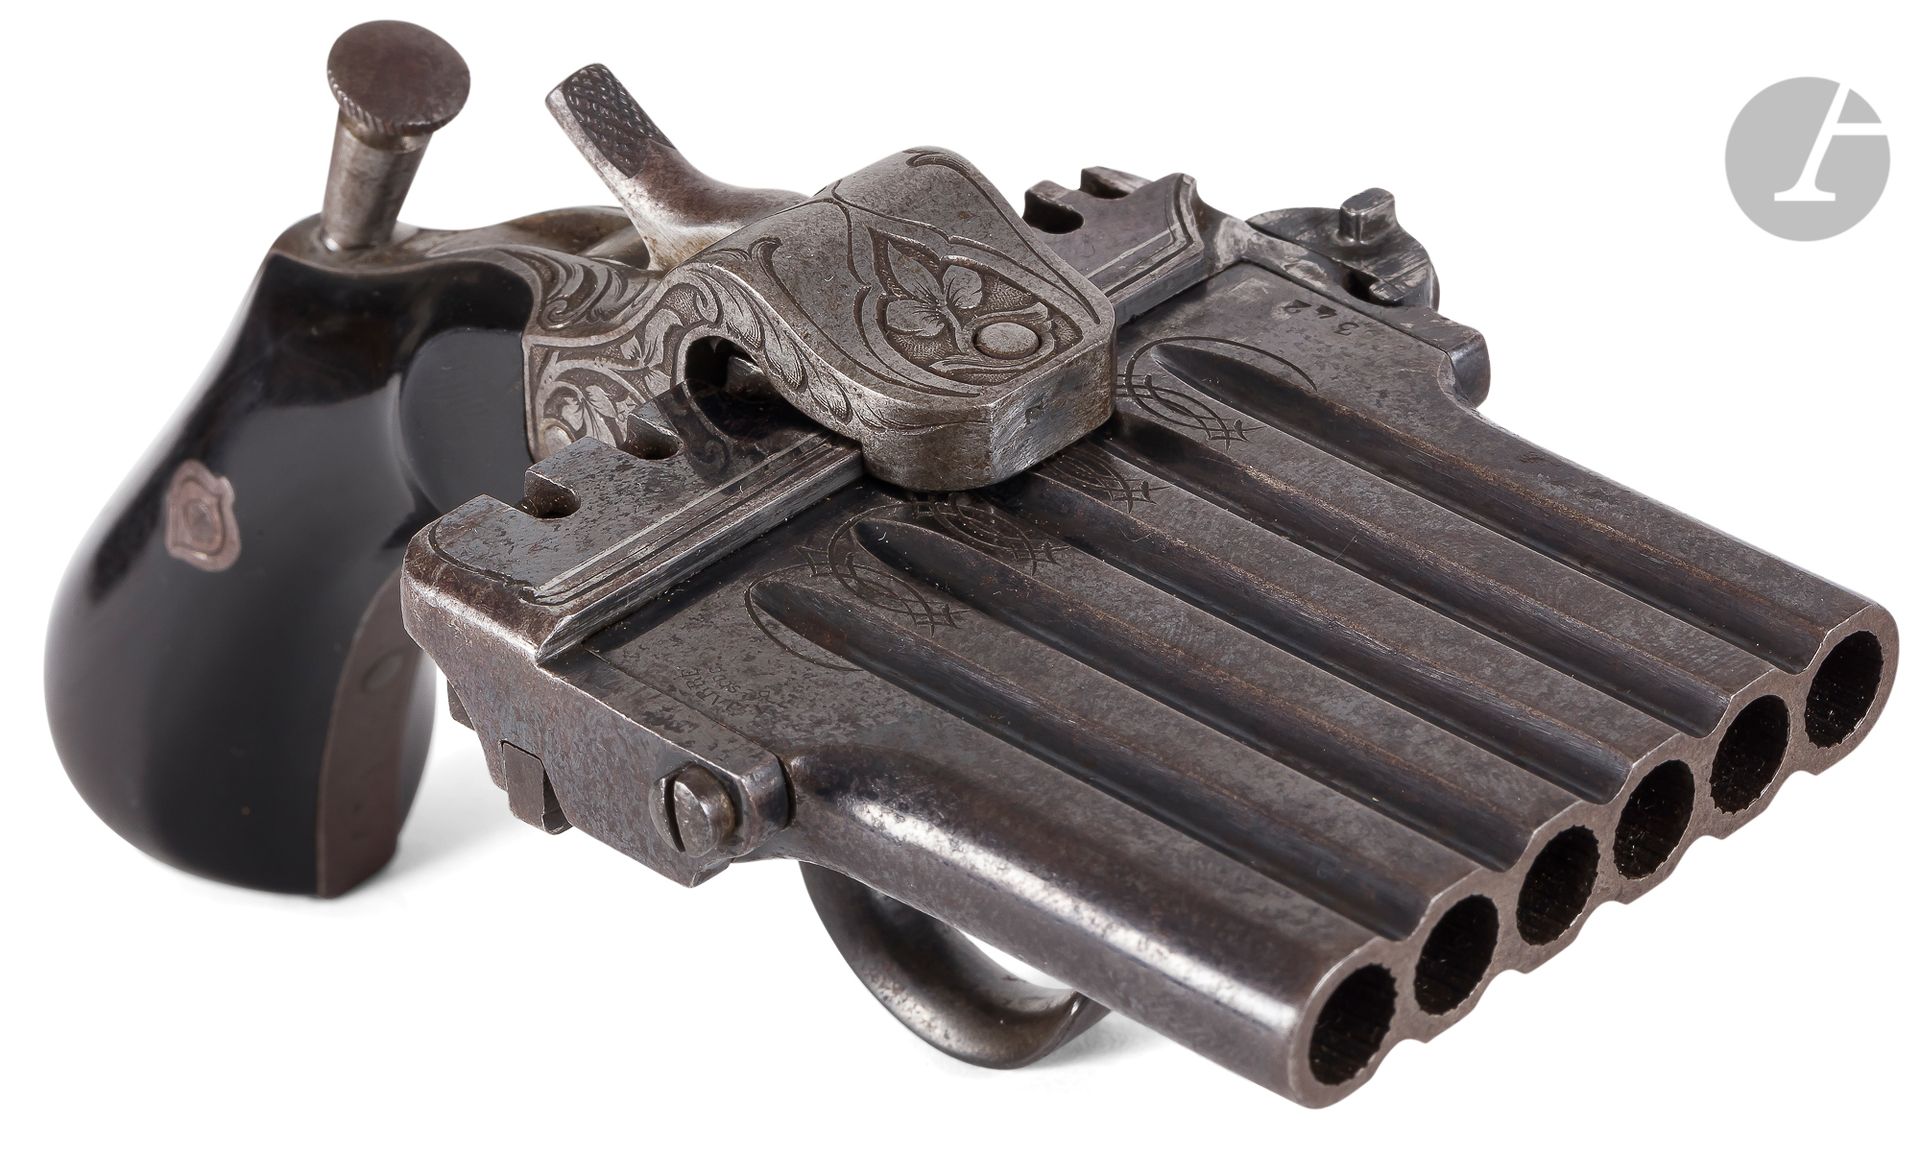 Null Pistola con sistema "Jarre", con pasador, de la

1er TIPO DIT " ARMÓNICA DE&hellip;